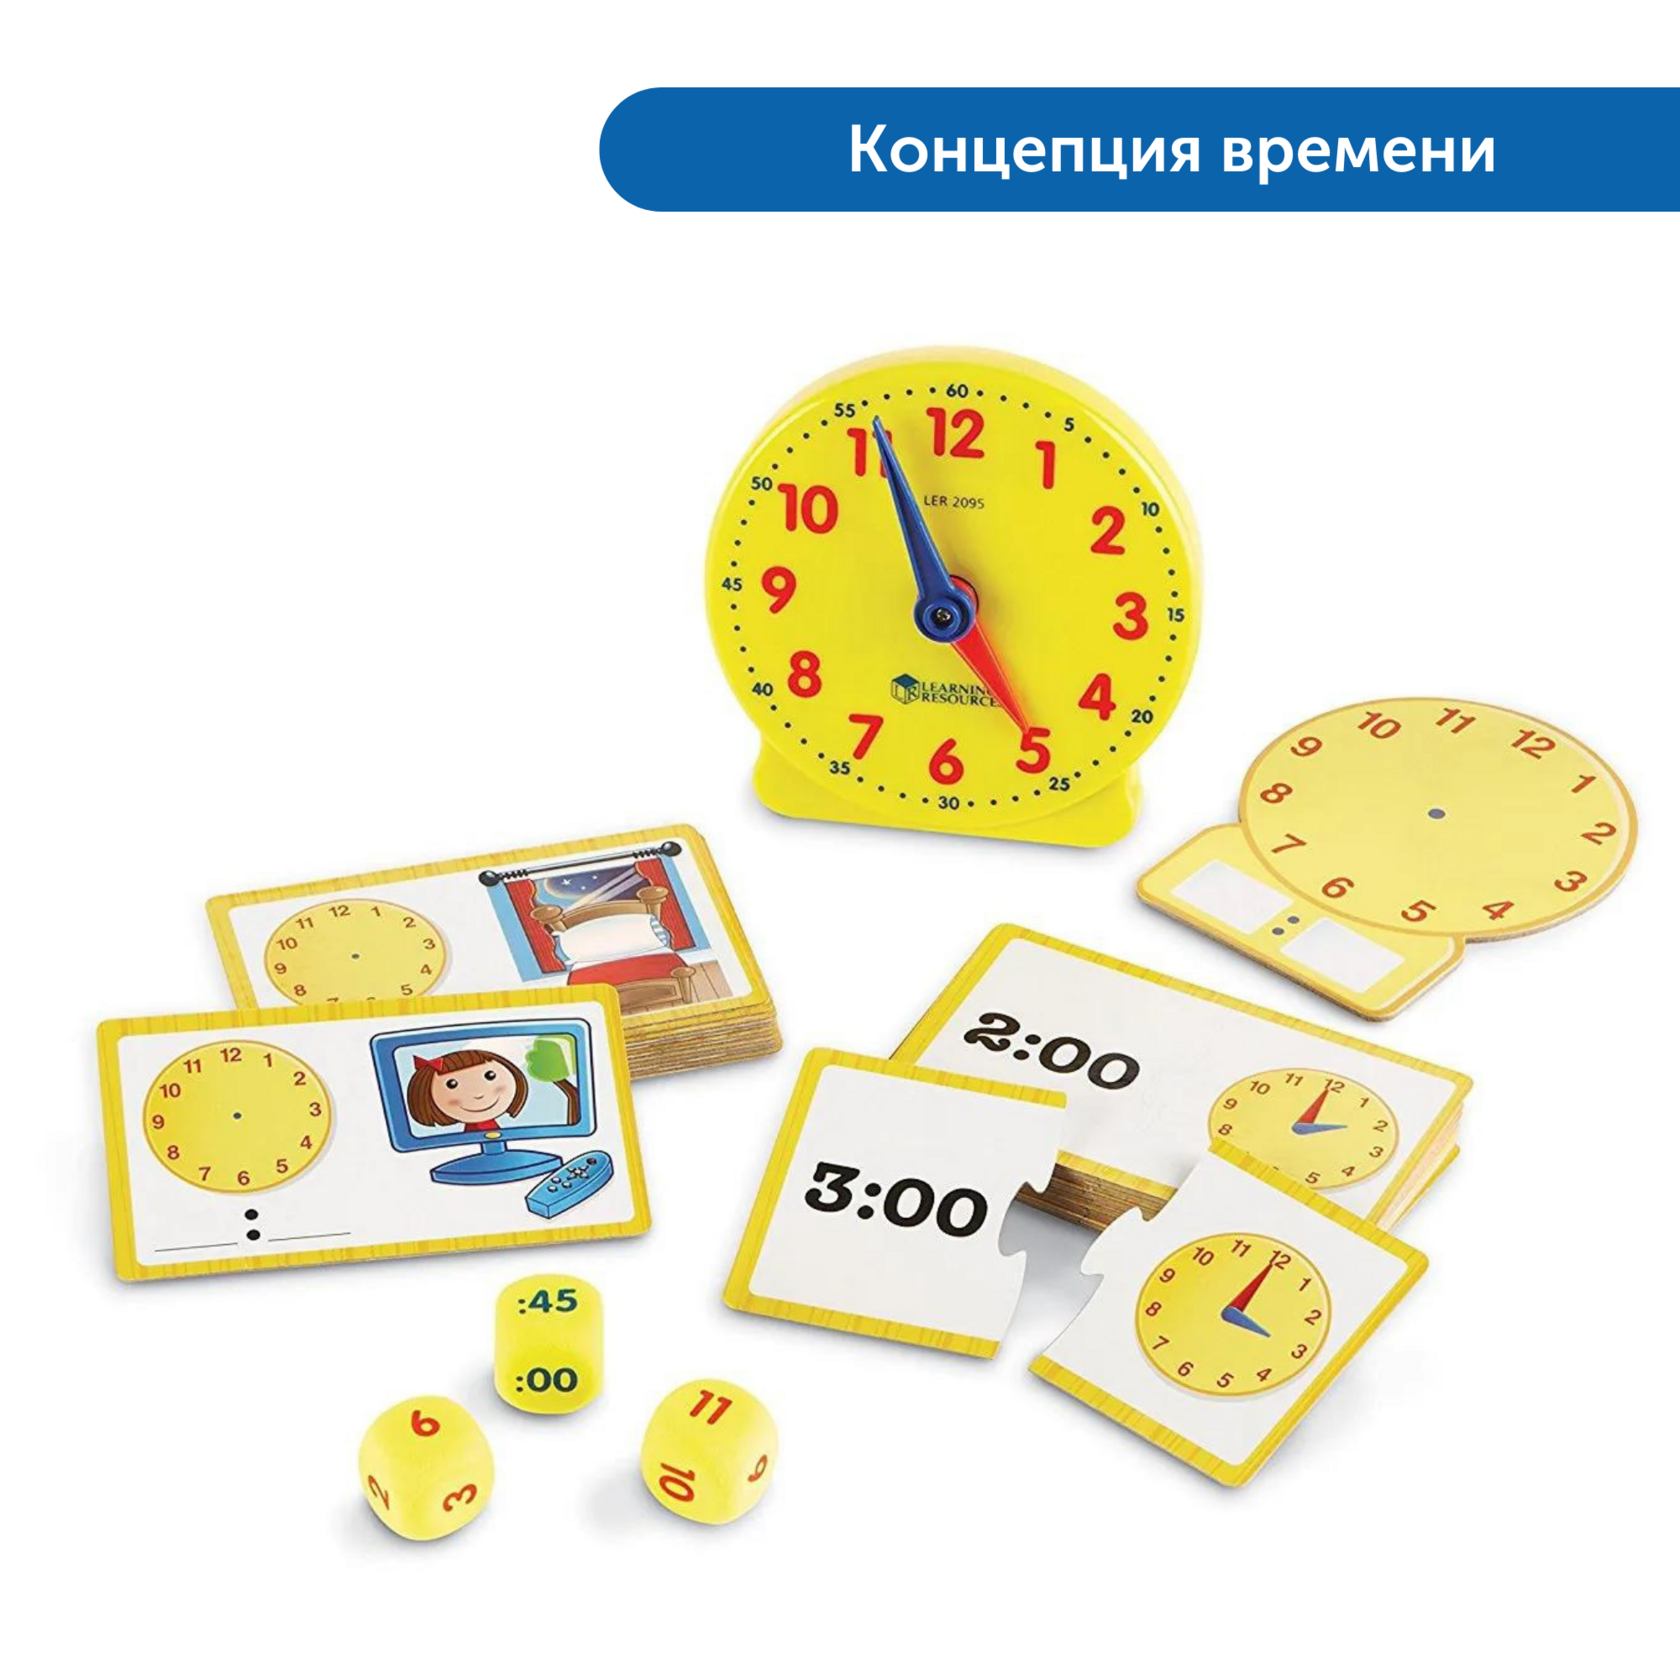 Игра учимся определять время. Обучающие часы. Игрушка для изучения часов. Часы игрушка для детей обучающие. Часы обучающие для детей.